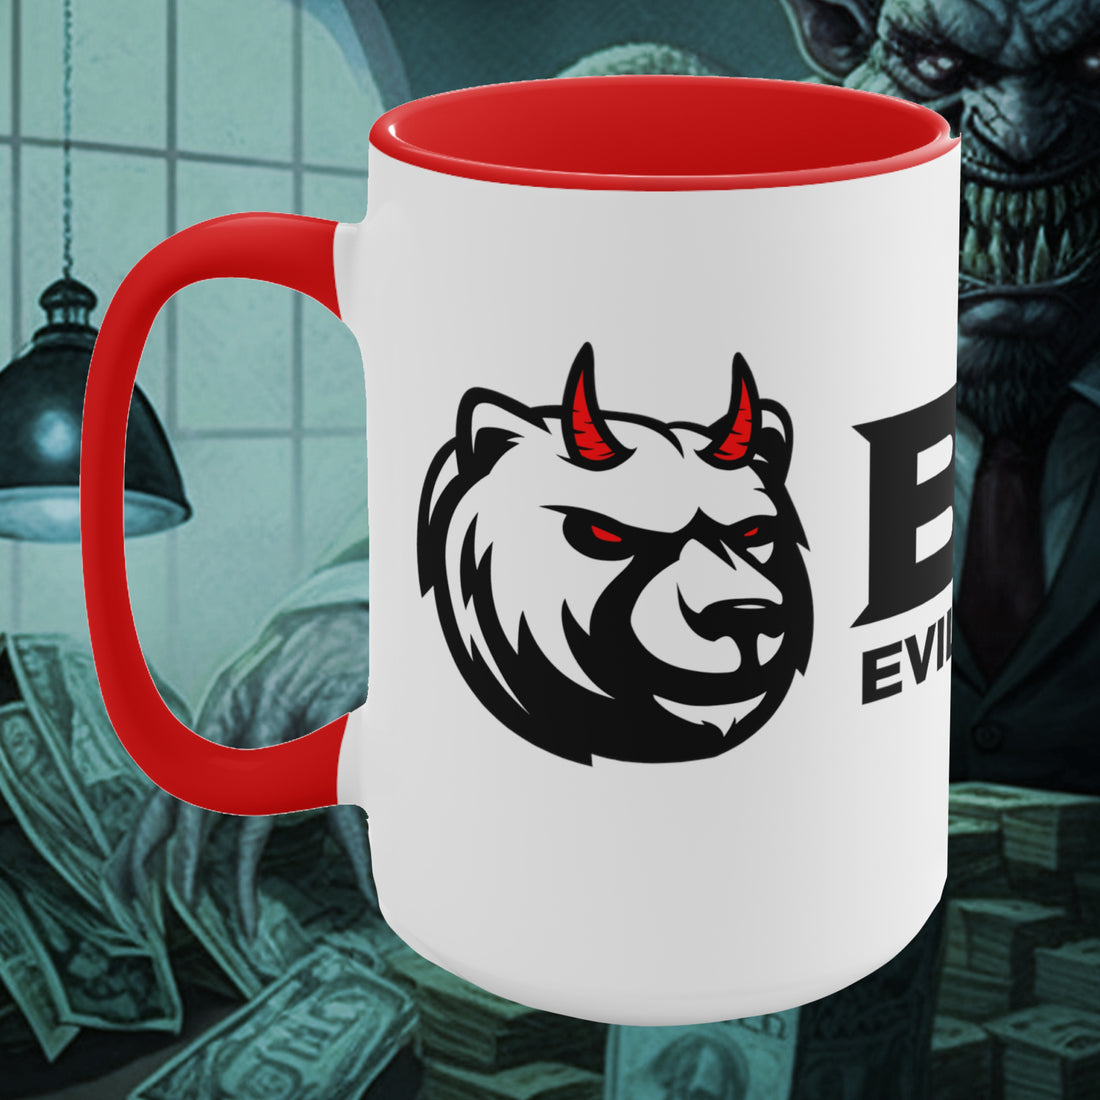 BEAR EVIL Mug